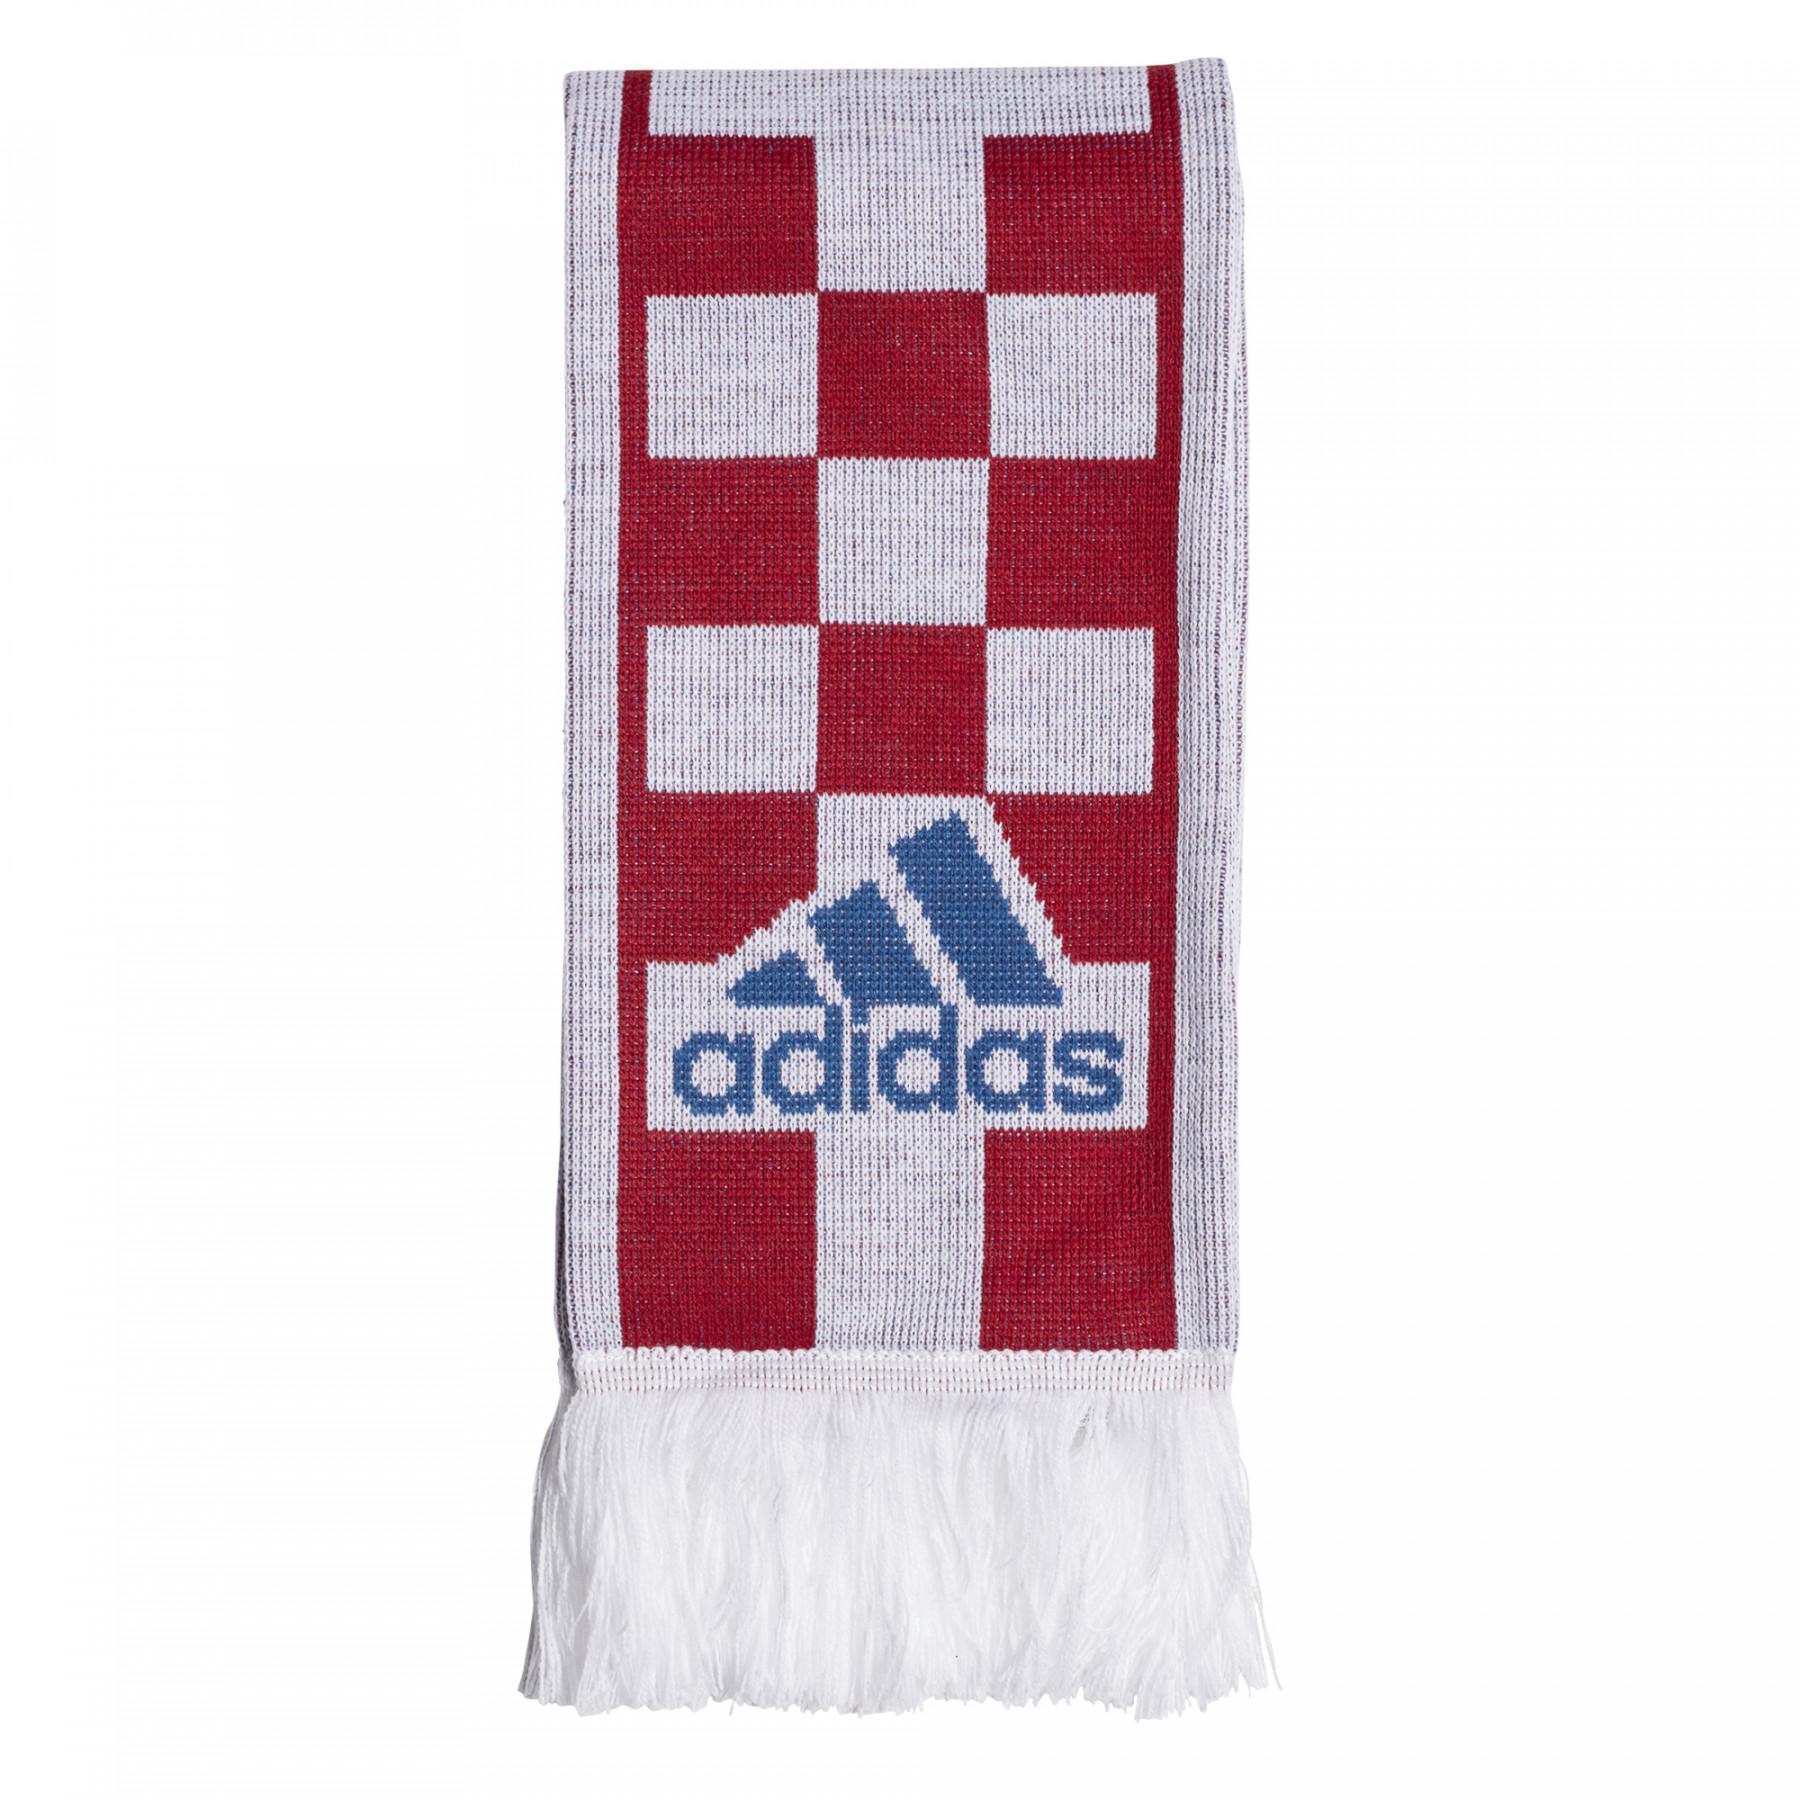 Écharpe adidas Croatie Fan Euro 2020